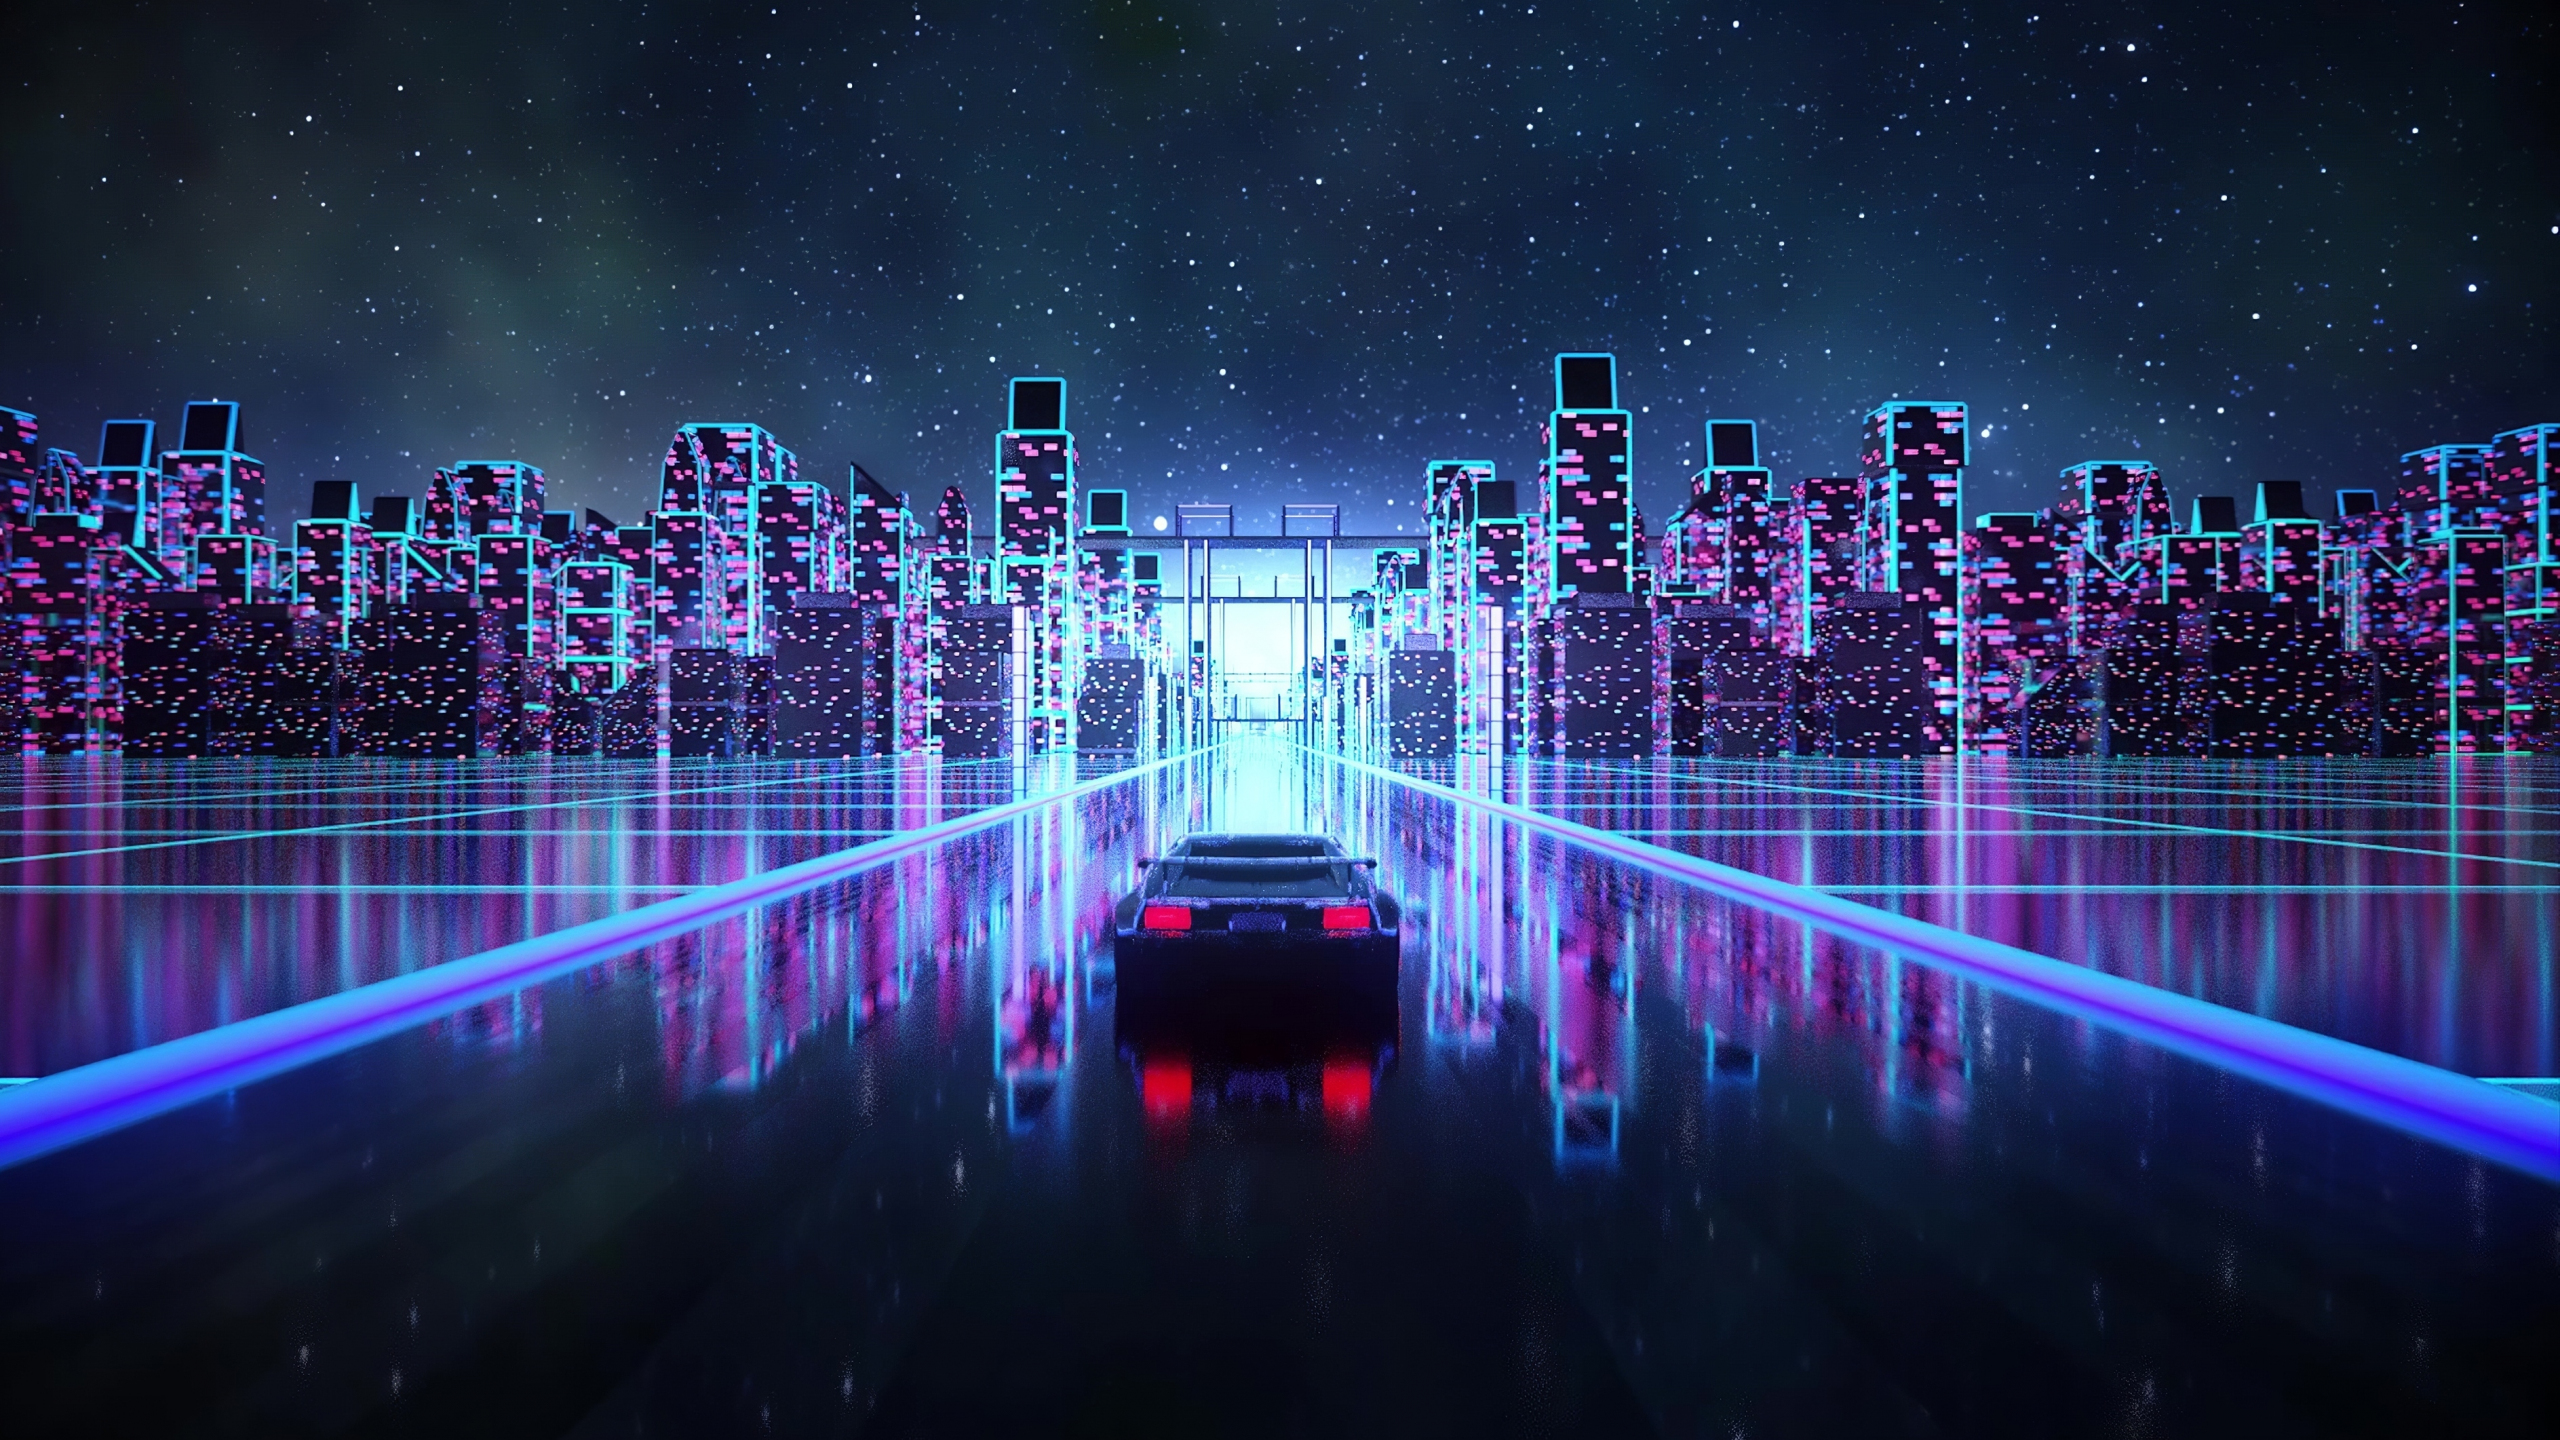 Cảm nhận cảm giác “đậm chất công nghệ thành phố” với bức tranh nền Cyberpunk xe đua cực kỳ nghệ thuật. Những đường cong và màu sắc sáng tạo sẽ chỉ cho bạn cảm giác chạy đua trong một thế giới ảo vô cùng phiêu lưu và hào nhoáng.